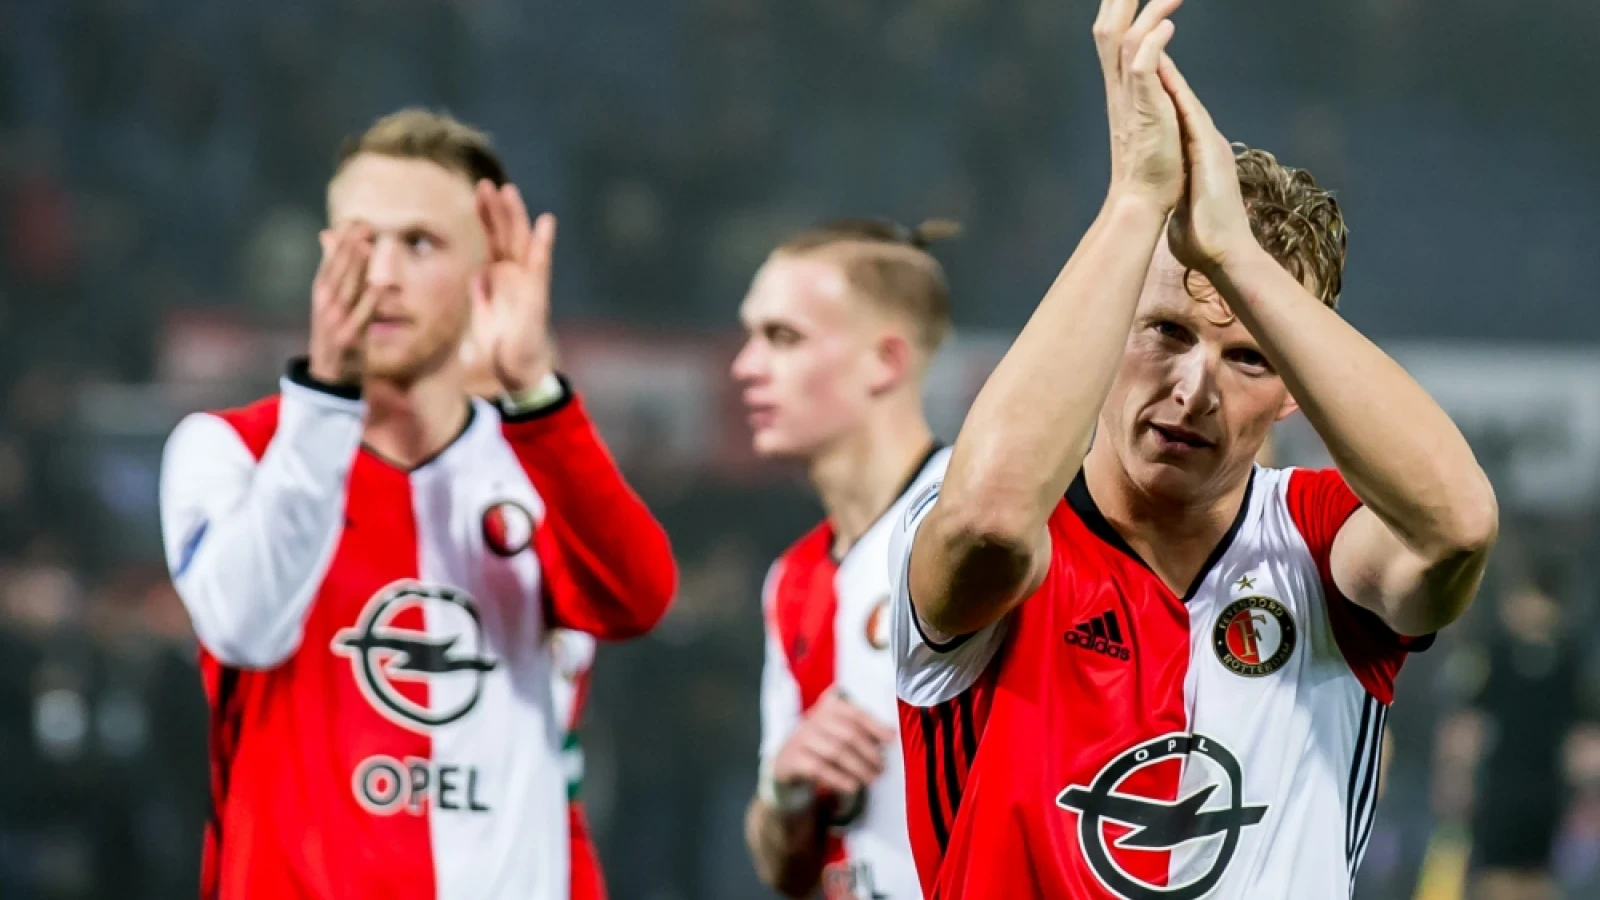 'Dan ben ik trots dat ik aanvoerder ben van dit Feyenoord'